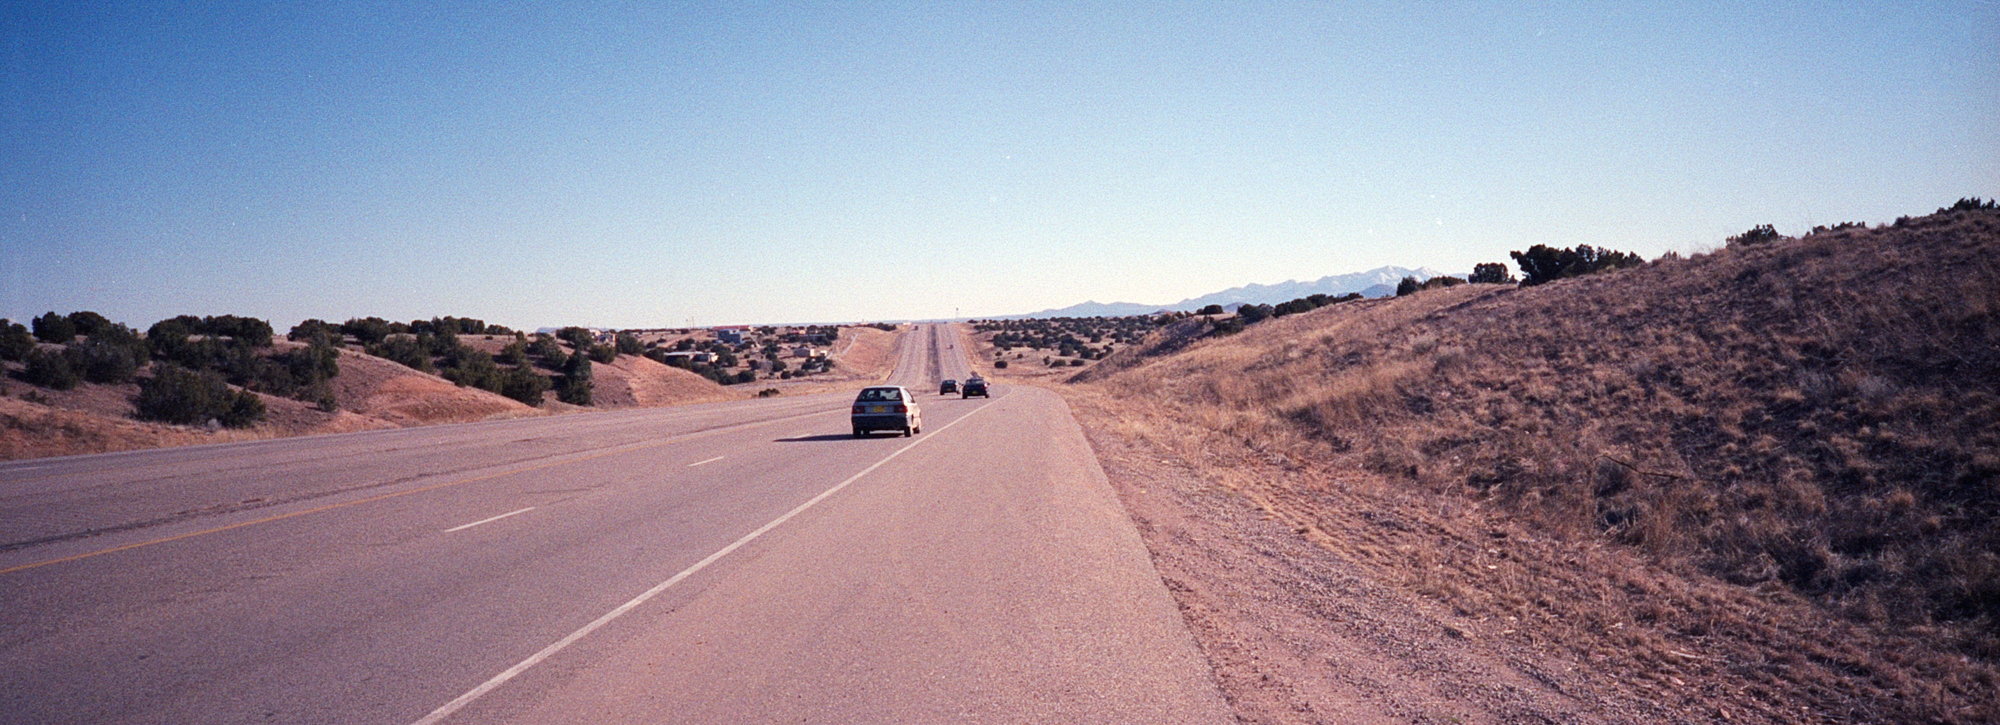 Wojciech Fangor: [Interstate 25], 1998